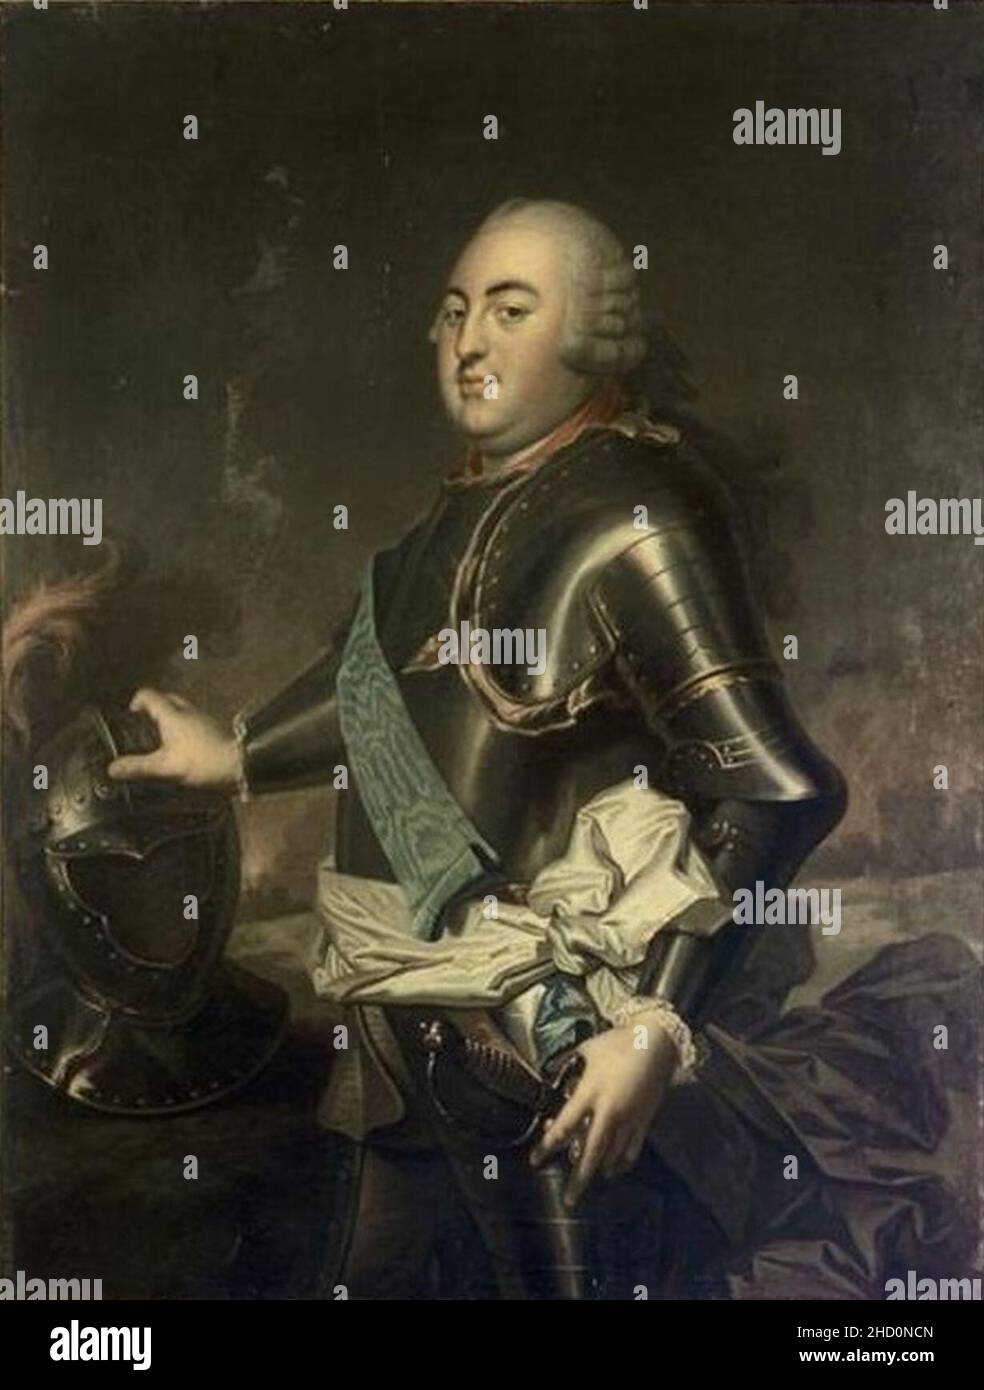 Rioult portrait after van Loo depicting Louis Philippe d'Orléans, Duke of Orléans (Versailles). Stock Photo